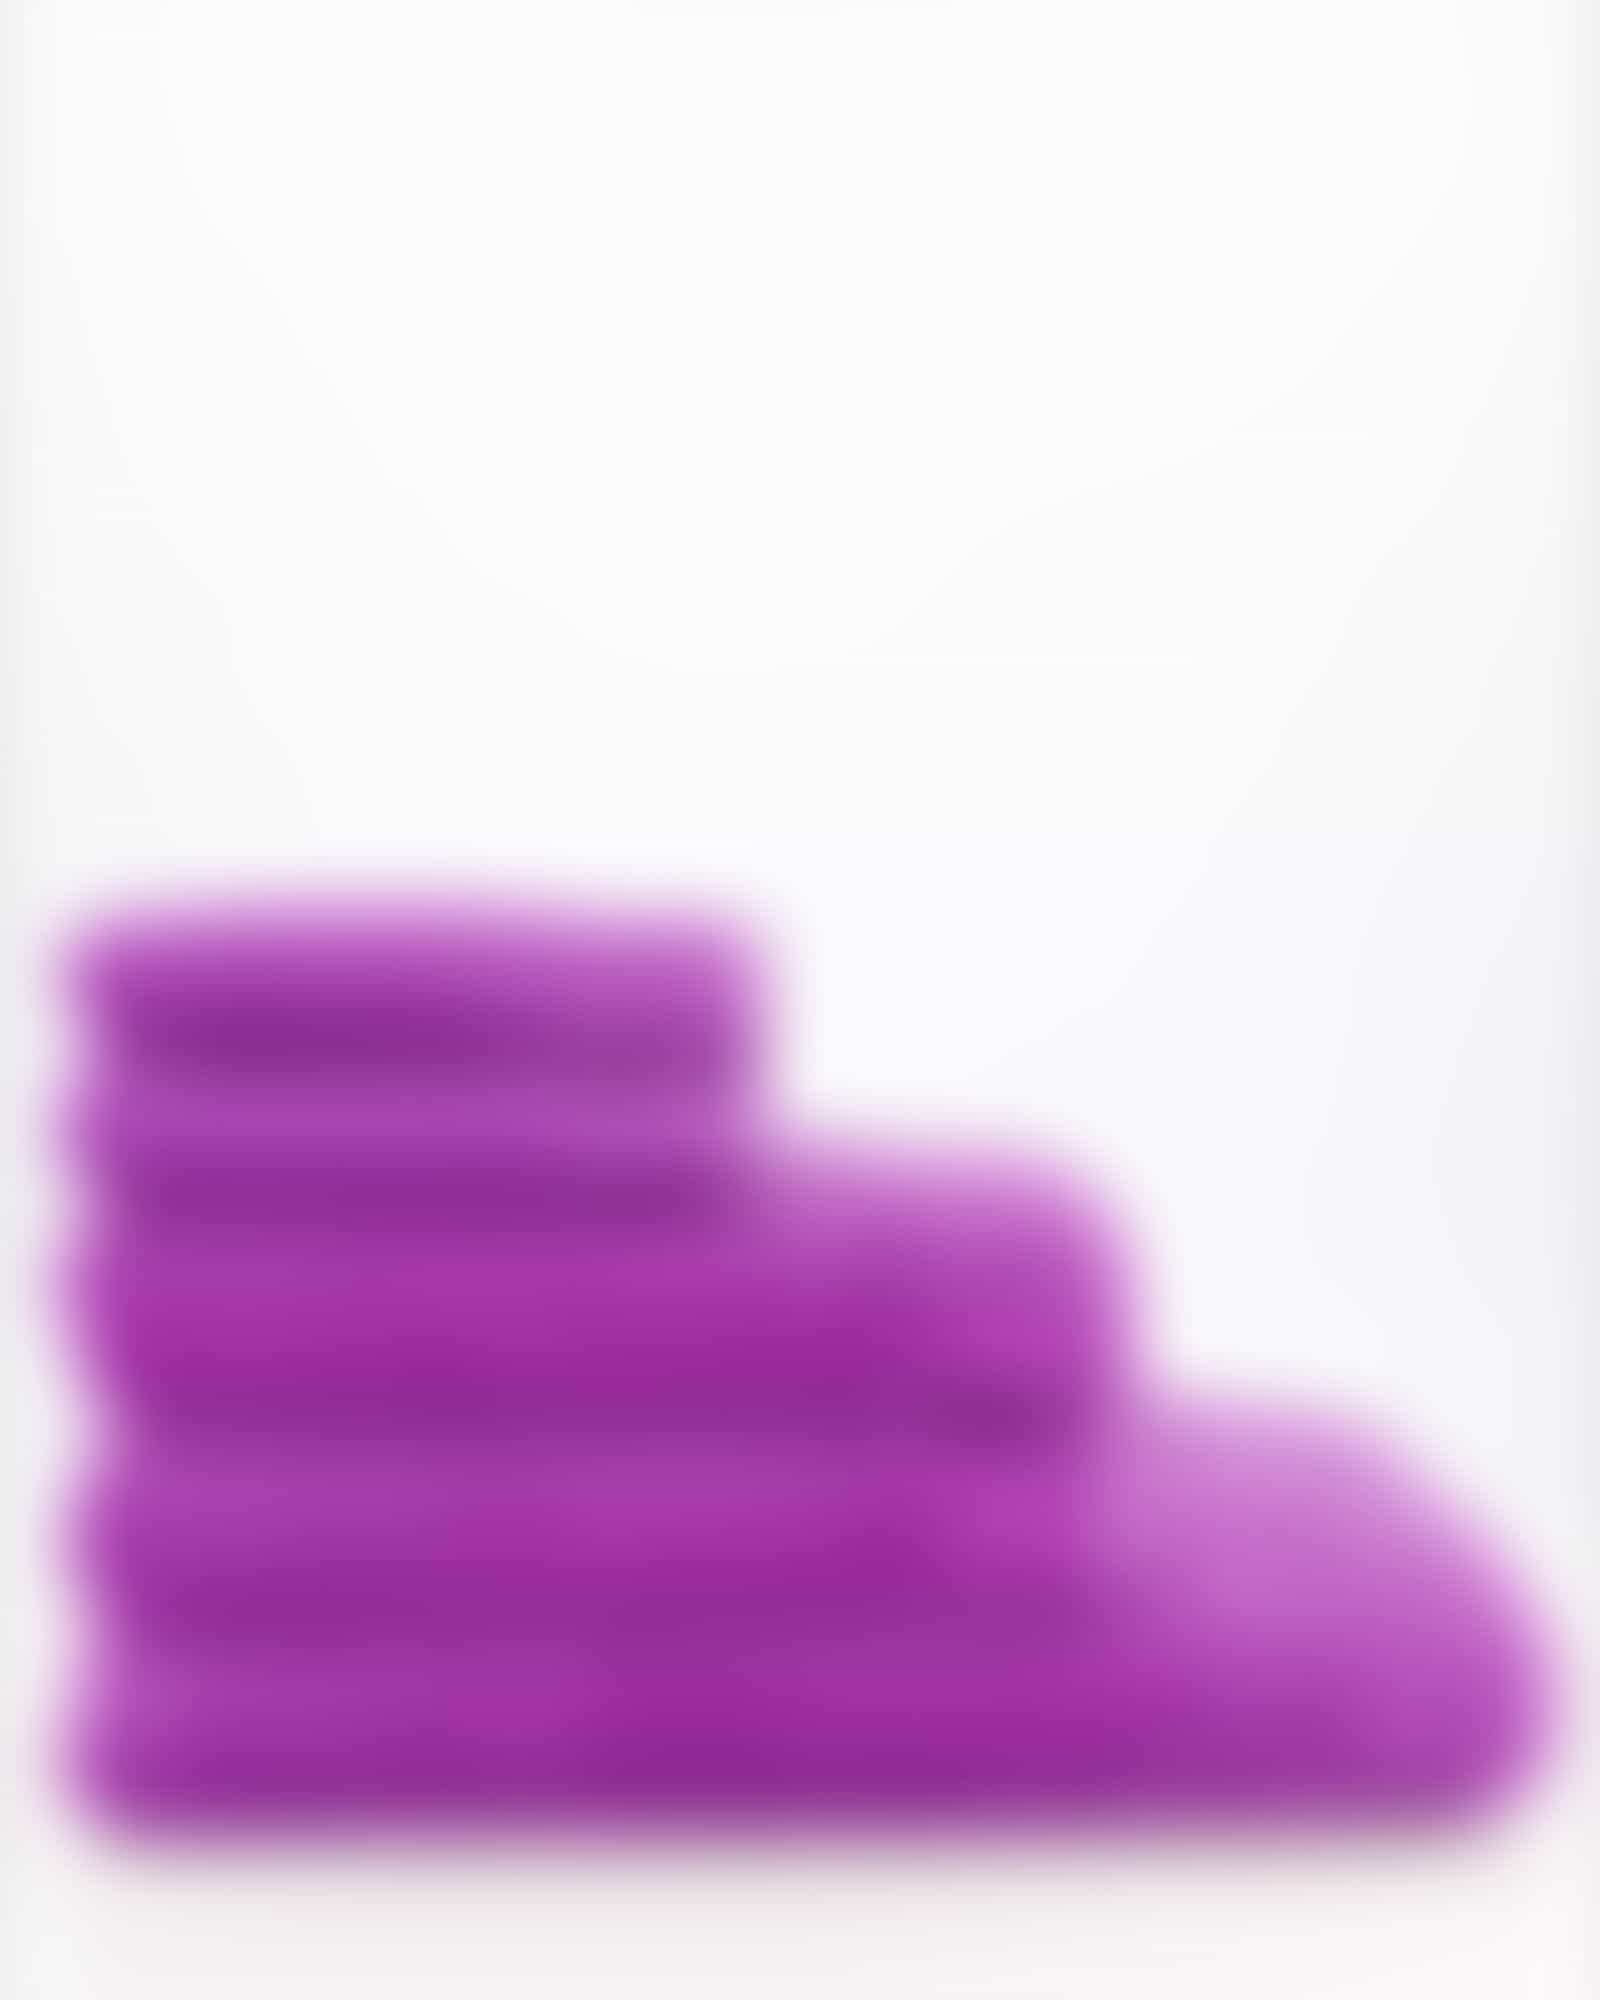 Vossen Handtücher Calypso Feeling - Farbe: lollipop - 8460 - Duschtuch 67x140 cm